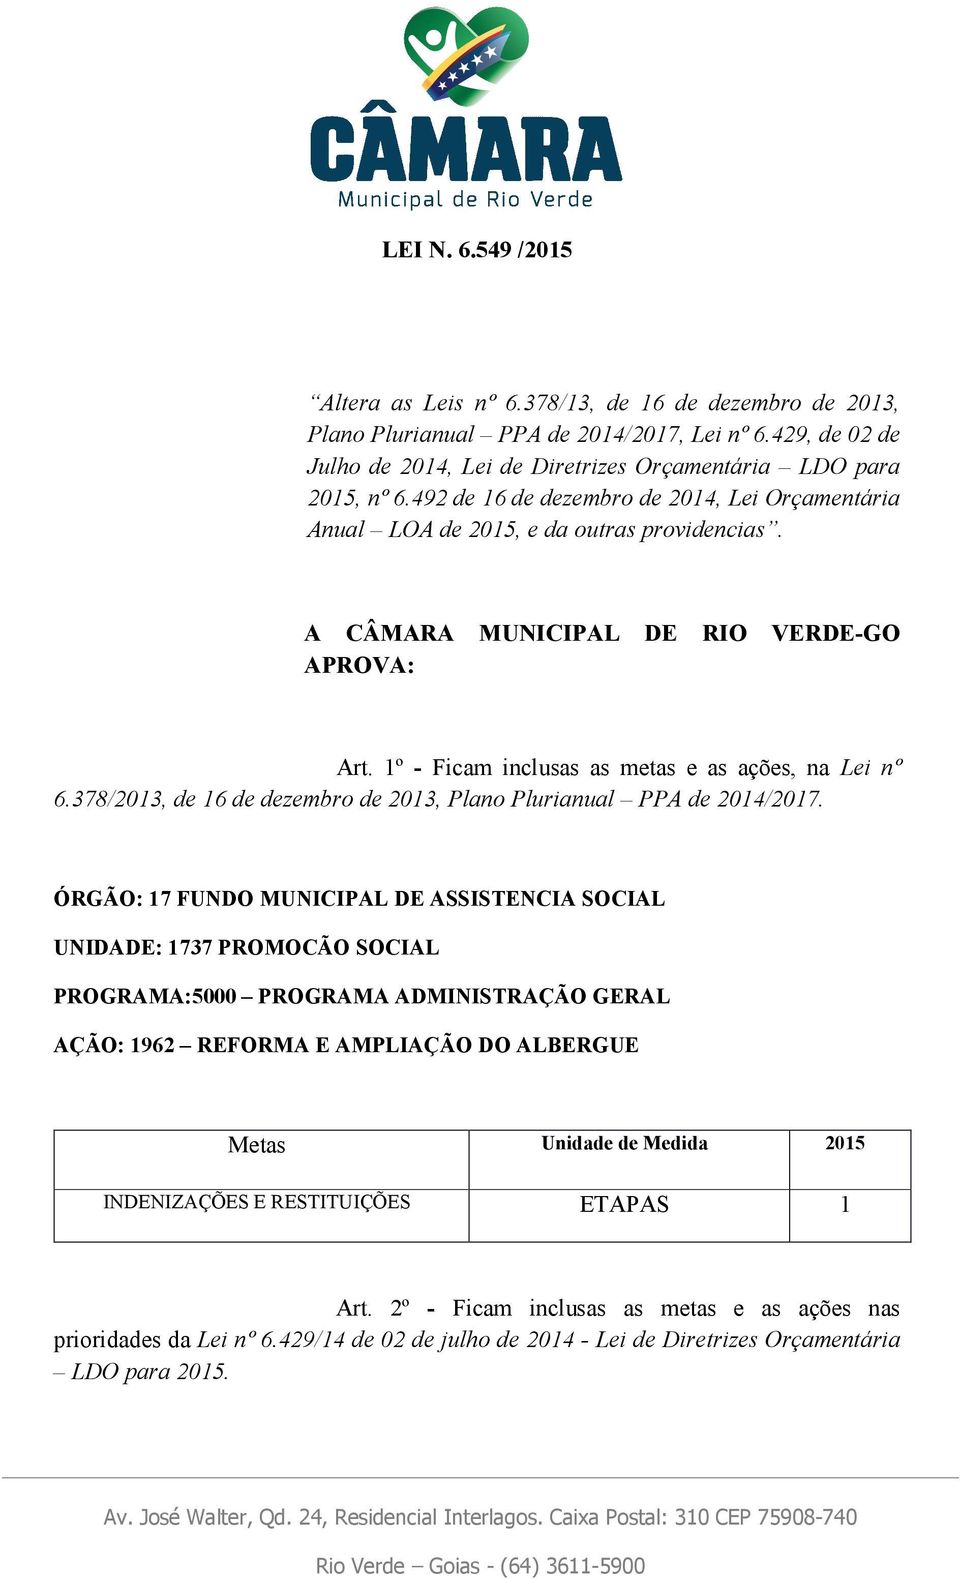 A CÂMARA MUNICIPAL DE RIO VERDE-GO APROVA: Art. 1º - Ficam inclusas as metas e as ações, na Lei nº 6.378/2013, de 16 de dezembro de 2013, Plano Plurianual PPA de 2014/2017.